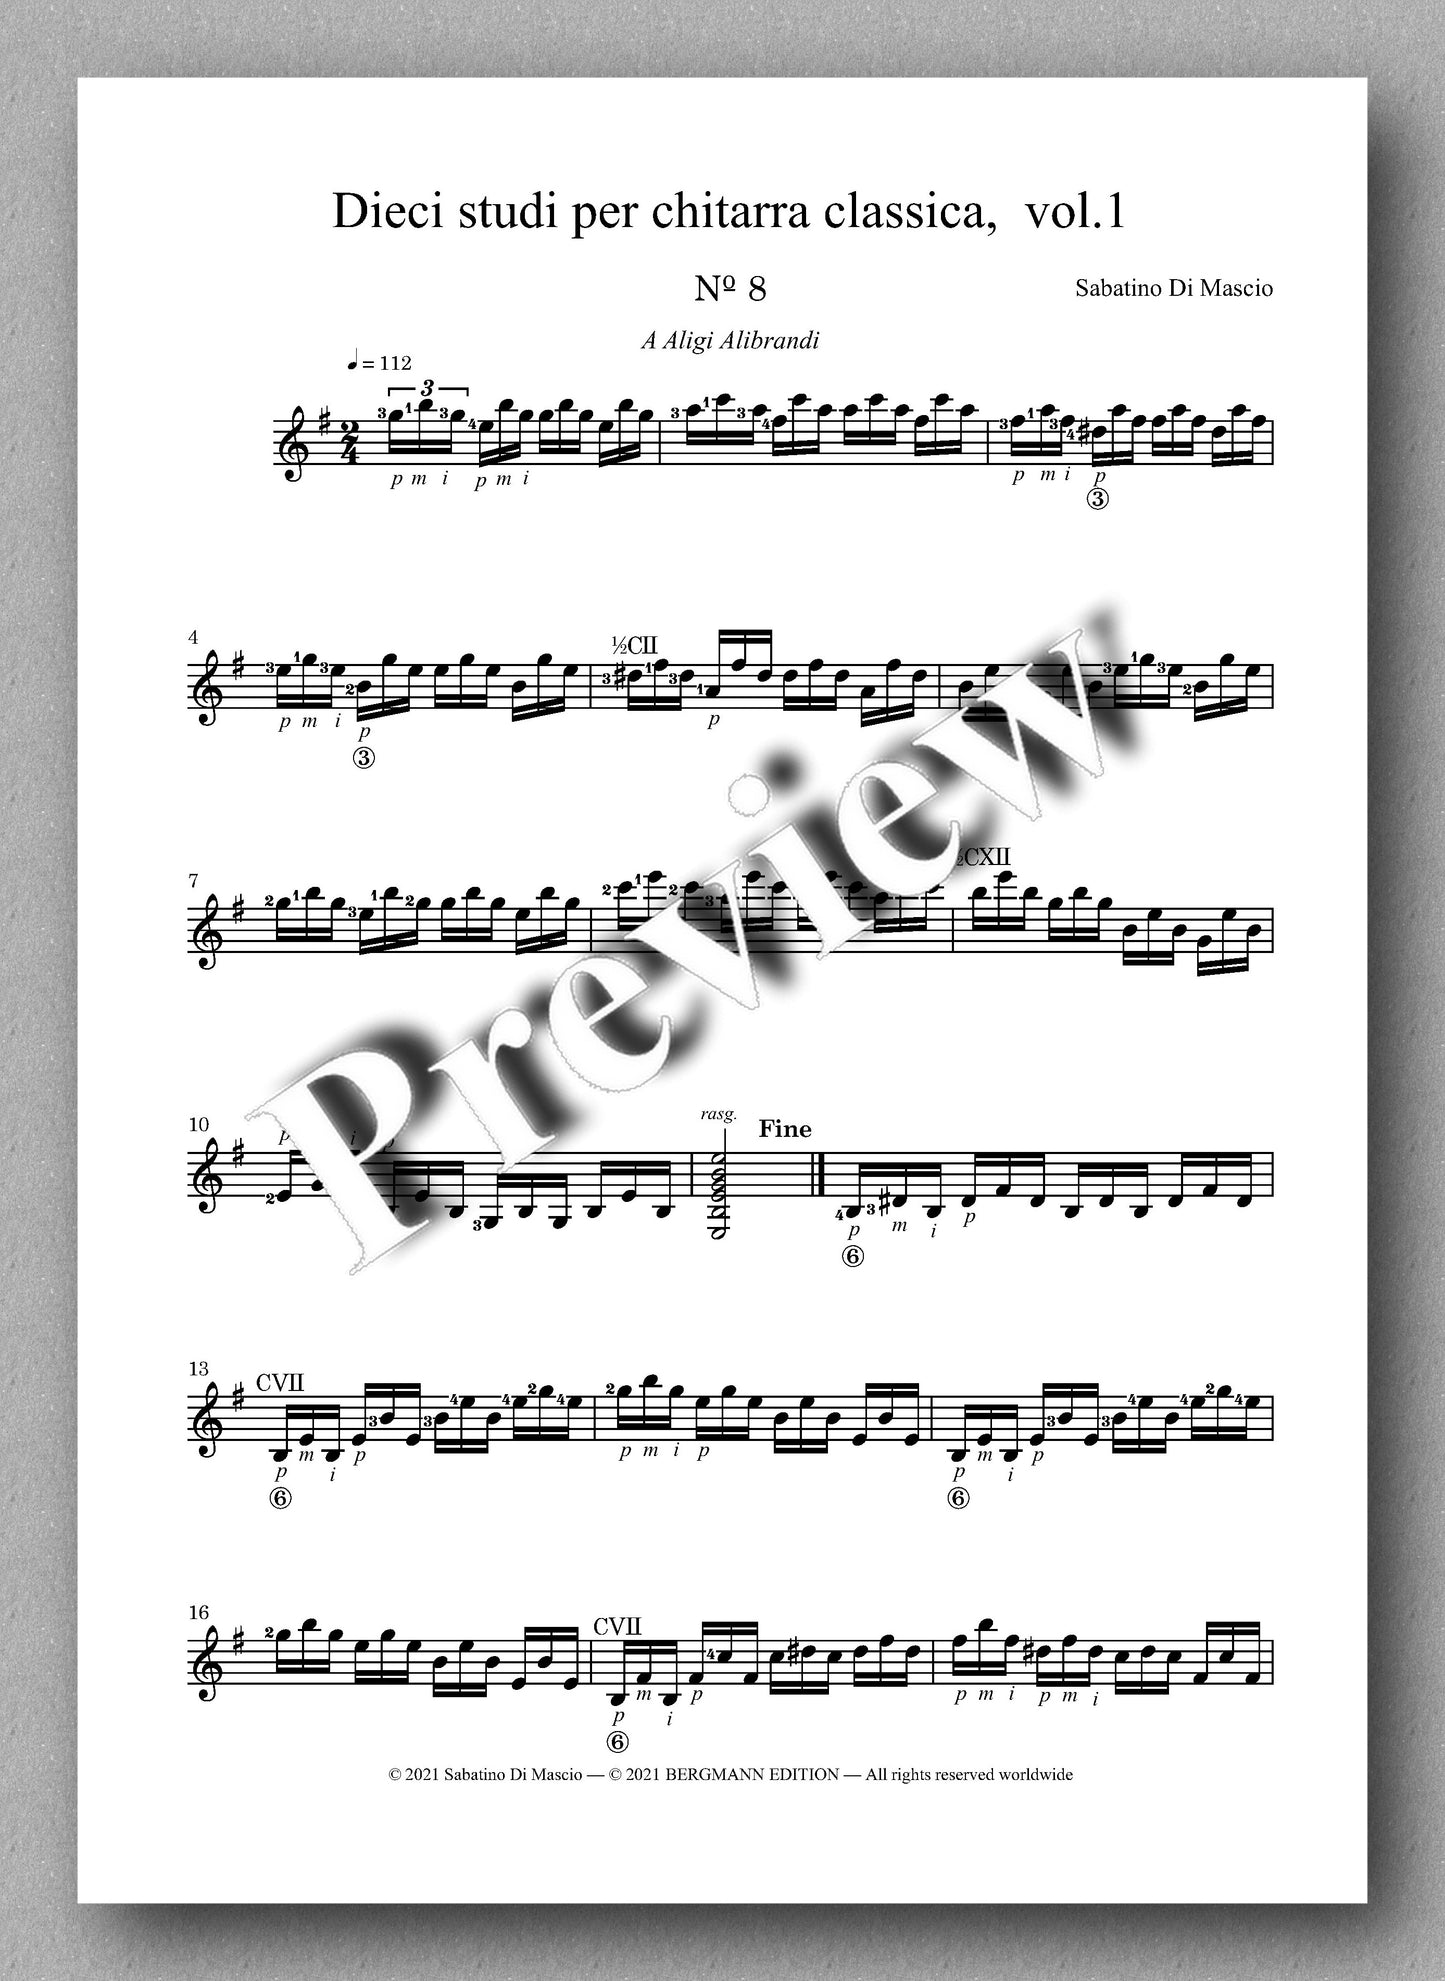 Di Mascio, Dieci studi per chitarra, Vol. 1 - music score 3